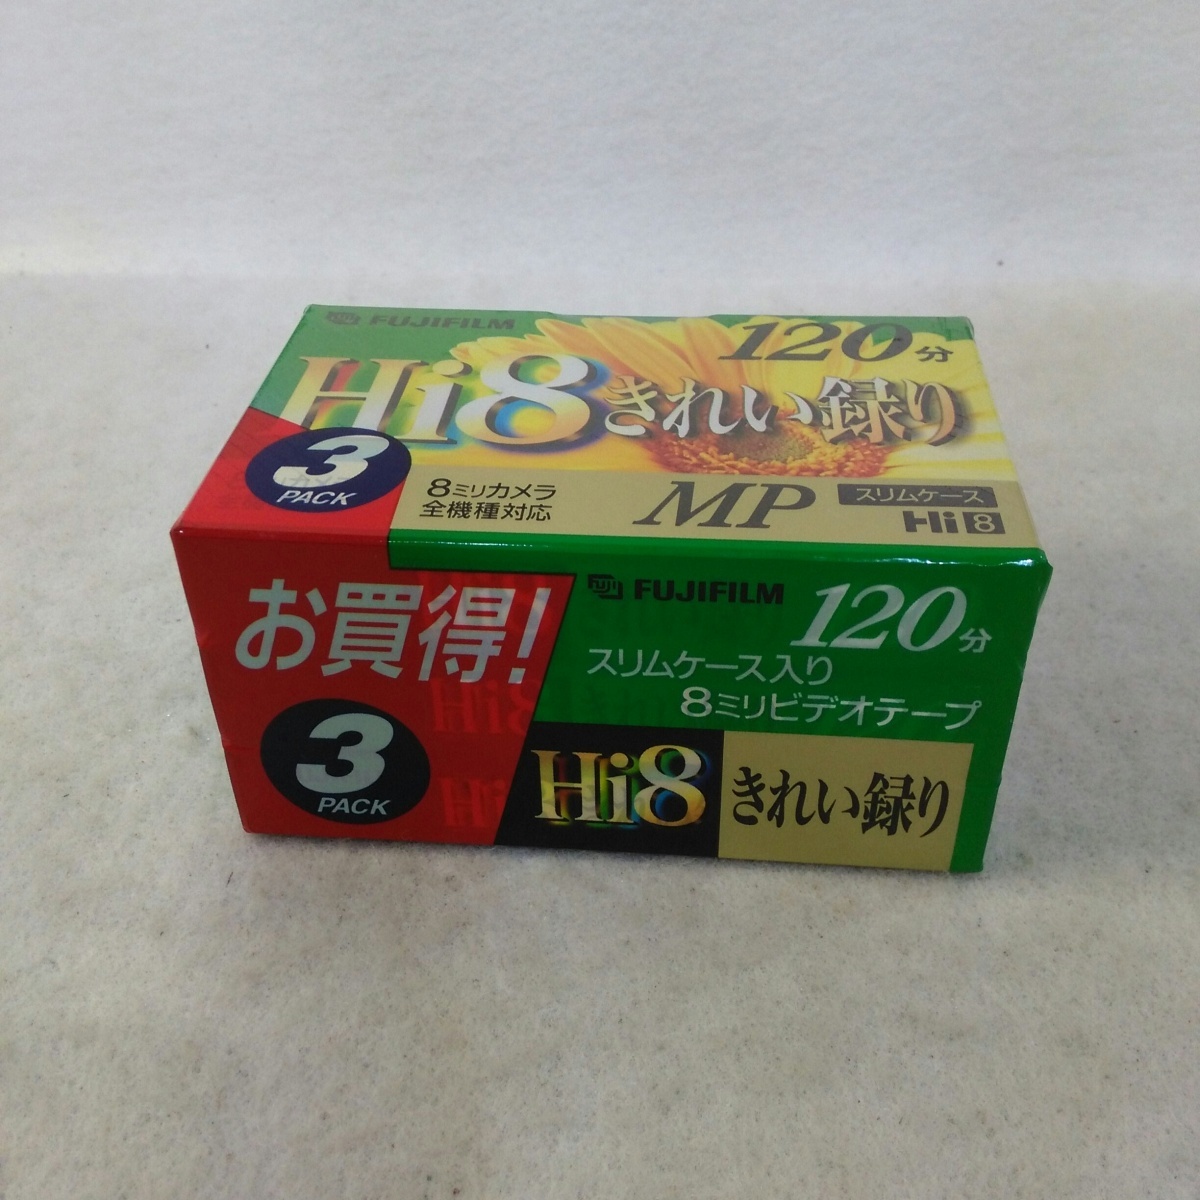 [ не использовался товар ] Fuji Film Hi8 для видео кассетная лента красивый запись .120 минут ×3 шт упаковка P6-120X3 HiMP C